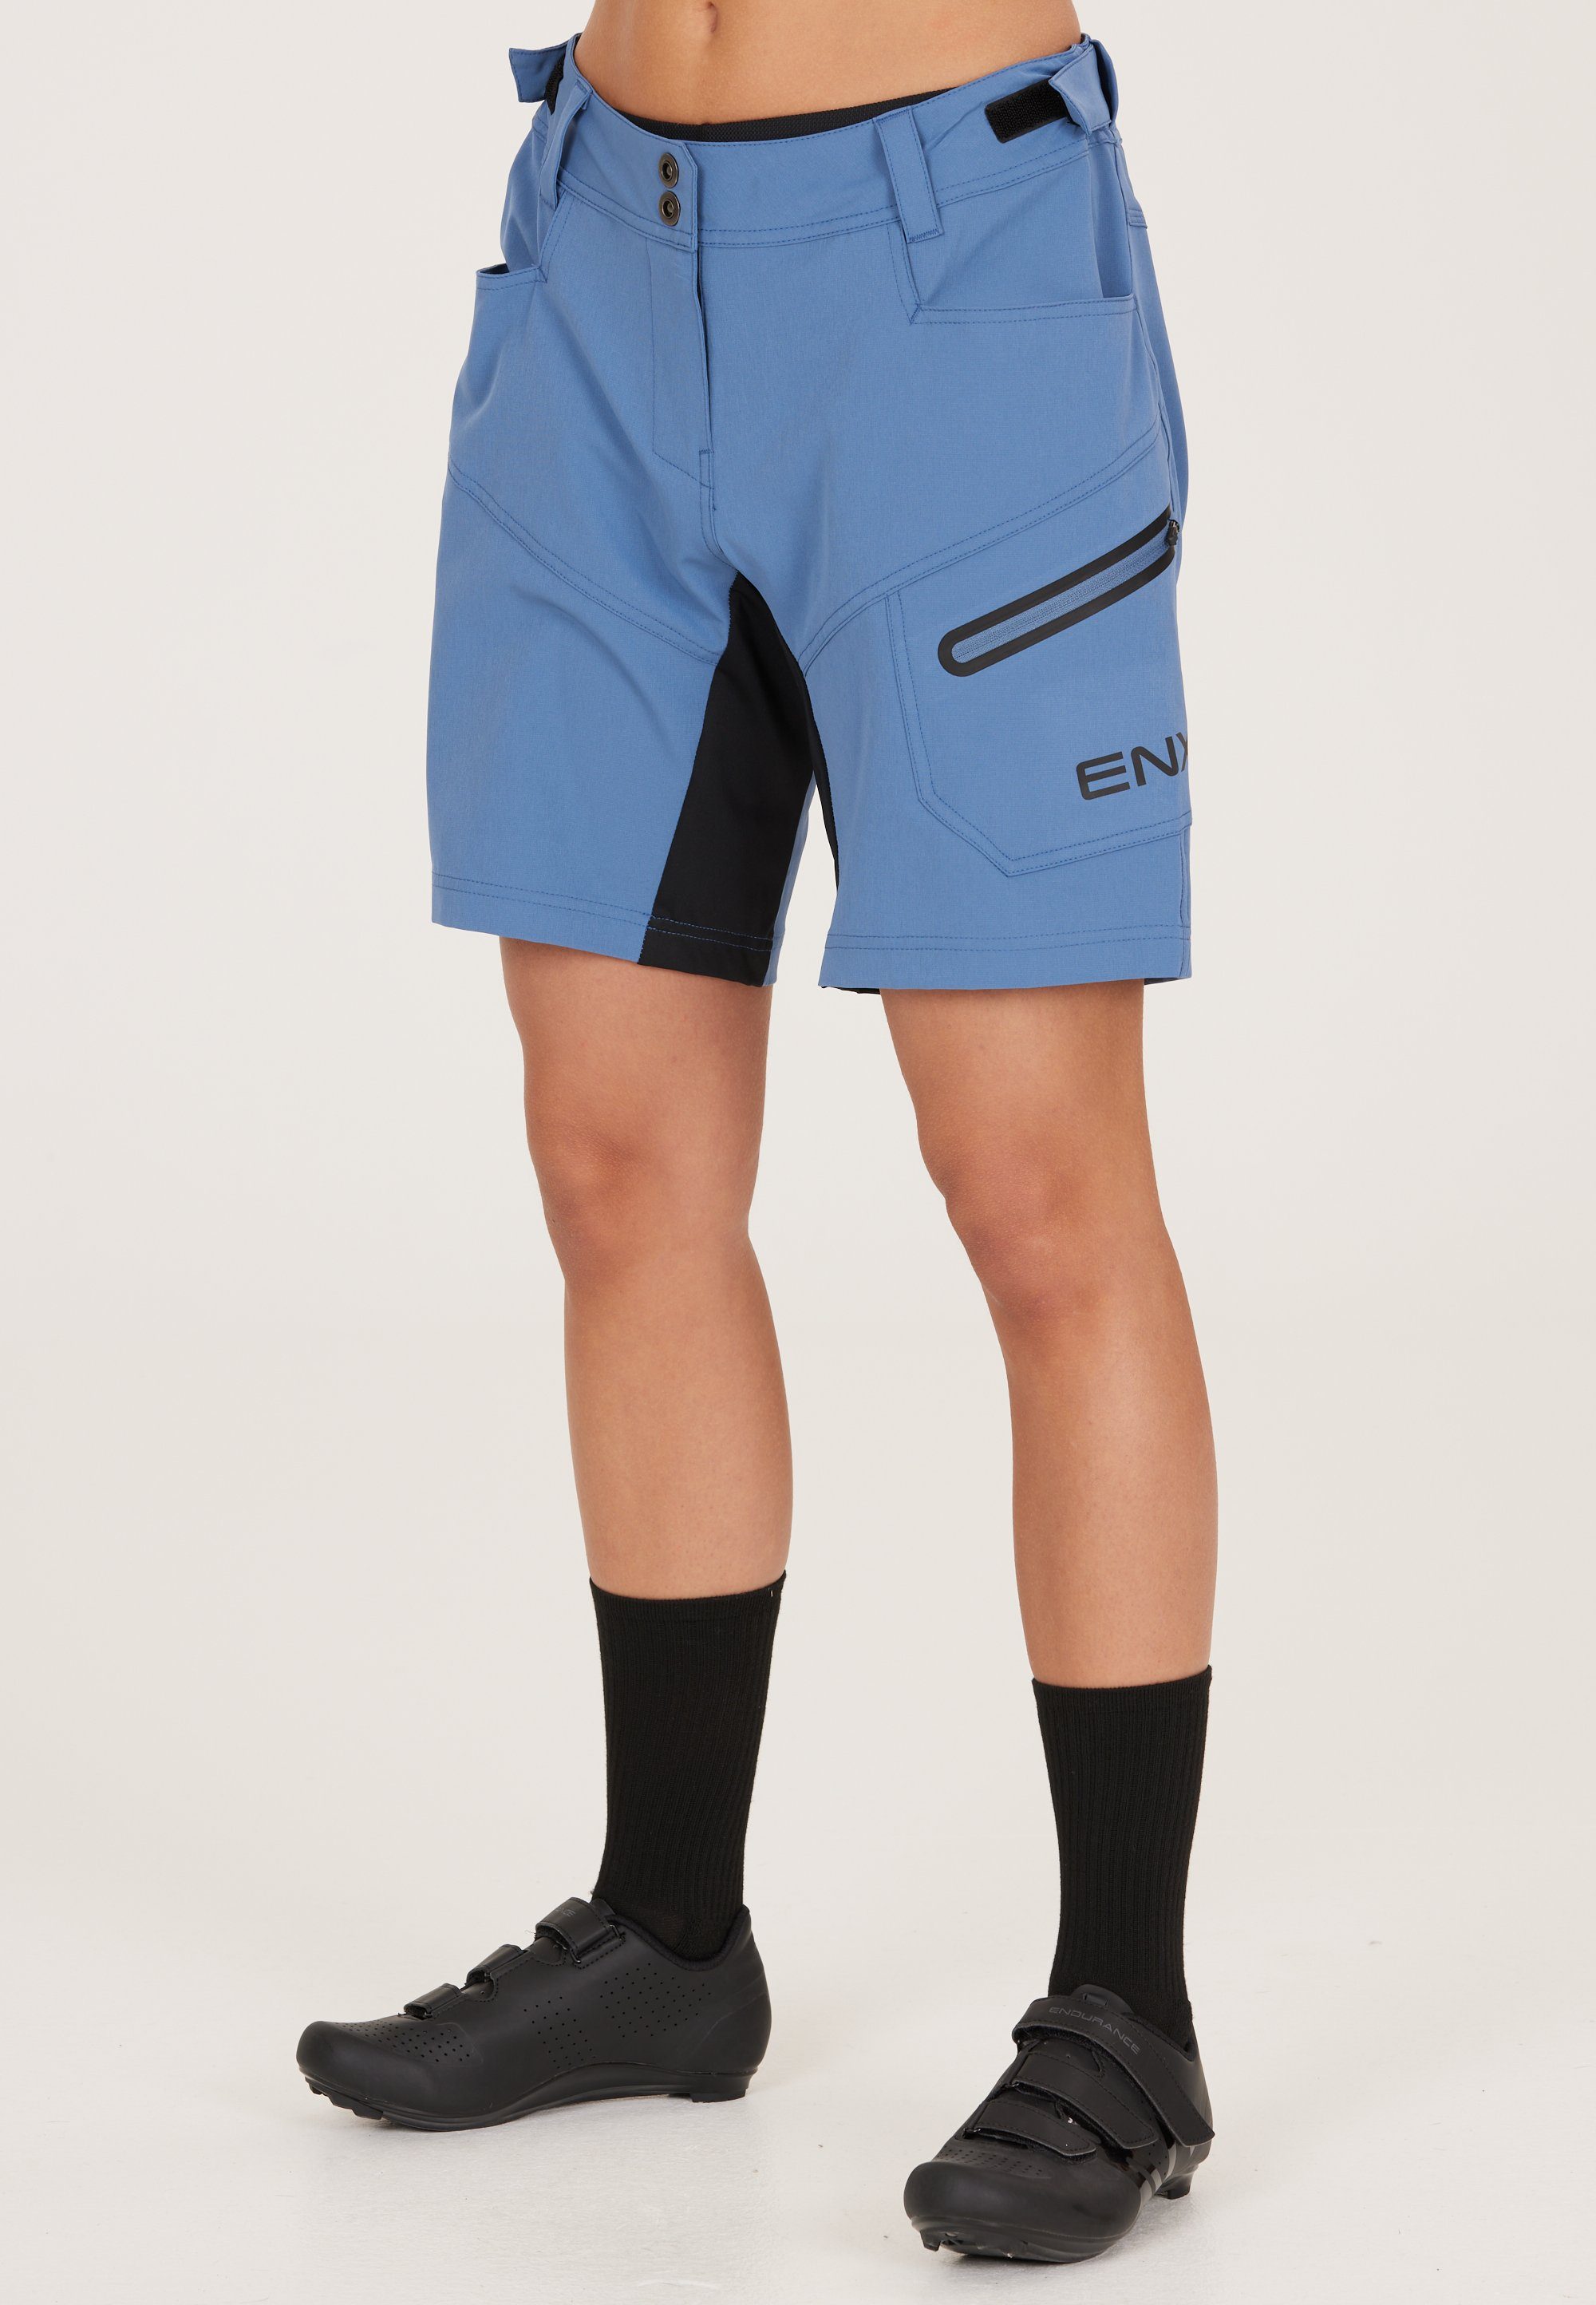 Versandkostenfreier Verkauf ENDURANCE Radhose Jamilla Innen-Tights 2 herausnehmbarer in 1 blau W mit Shorts